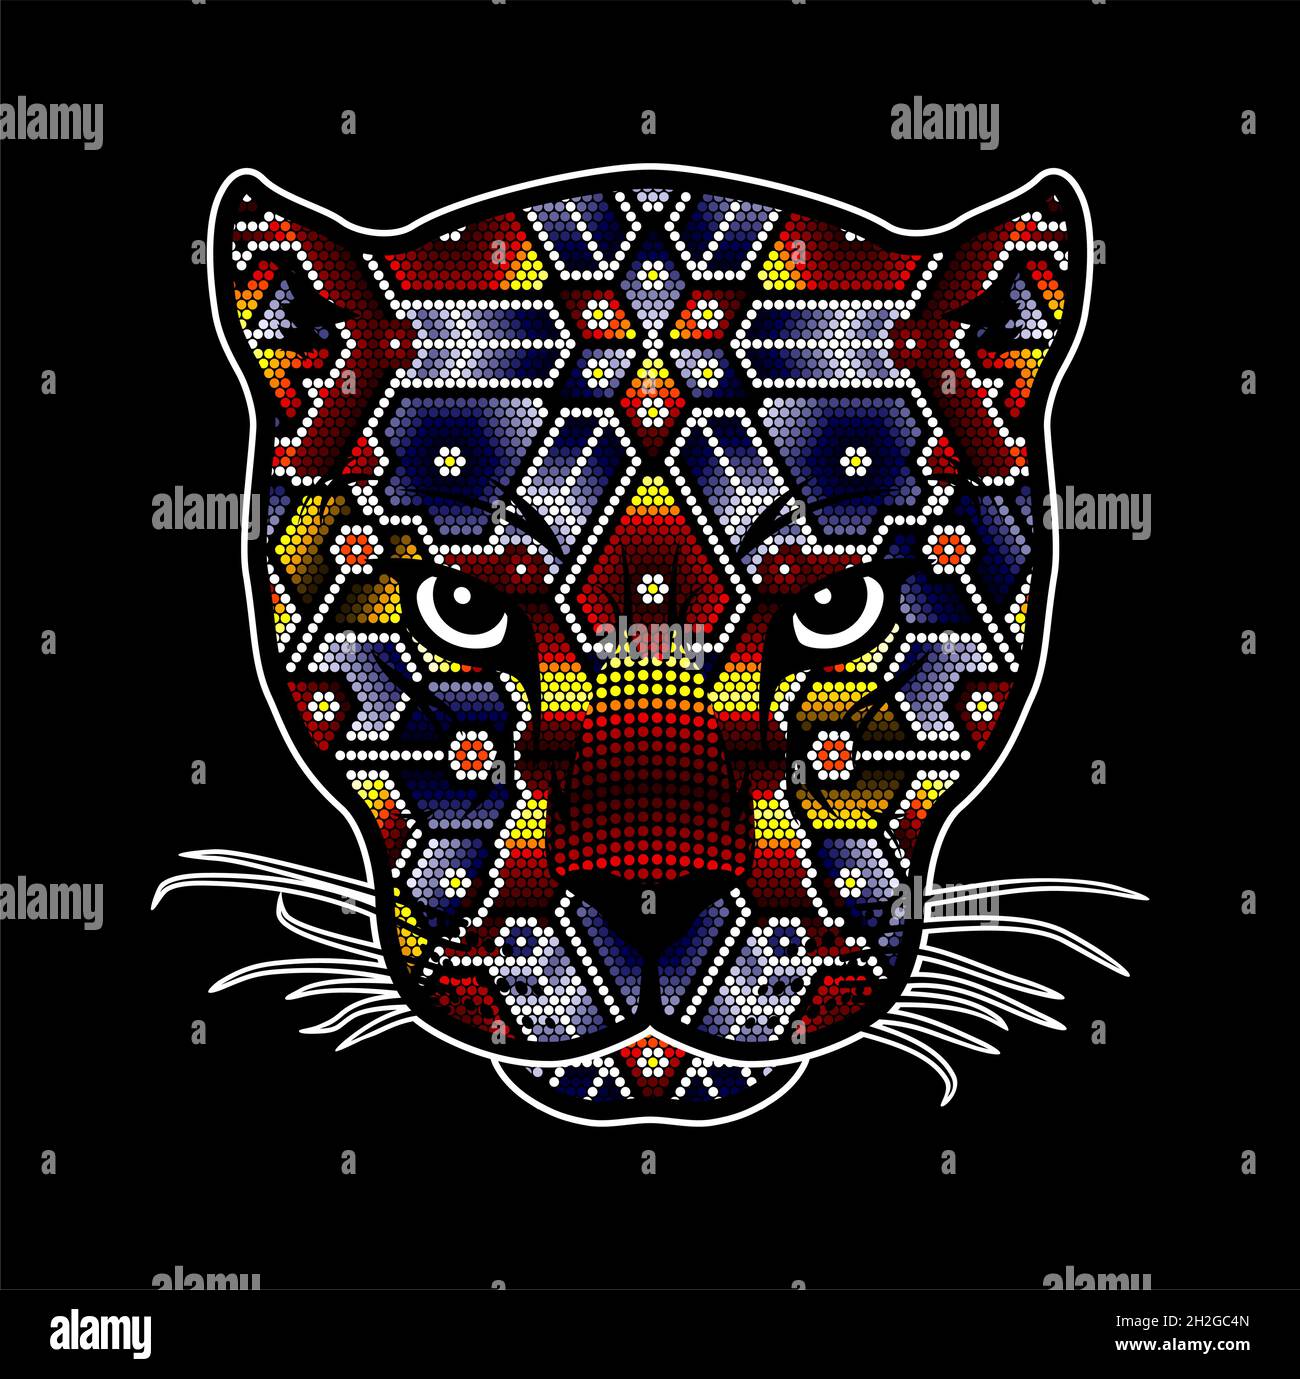 Illustration vectorielle d'une tête de chat sauvage à perles colorées qui pourrait être une jaguar, un couguar, un léopard, etc. Inspirée de l'art mexicain du huichol isolé sur le blac Illustration de Vecteur